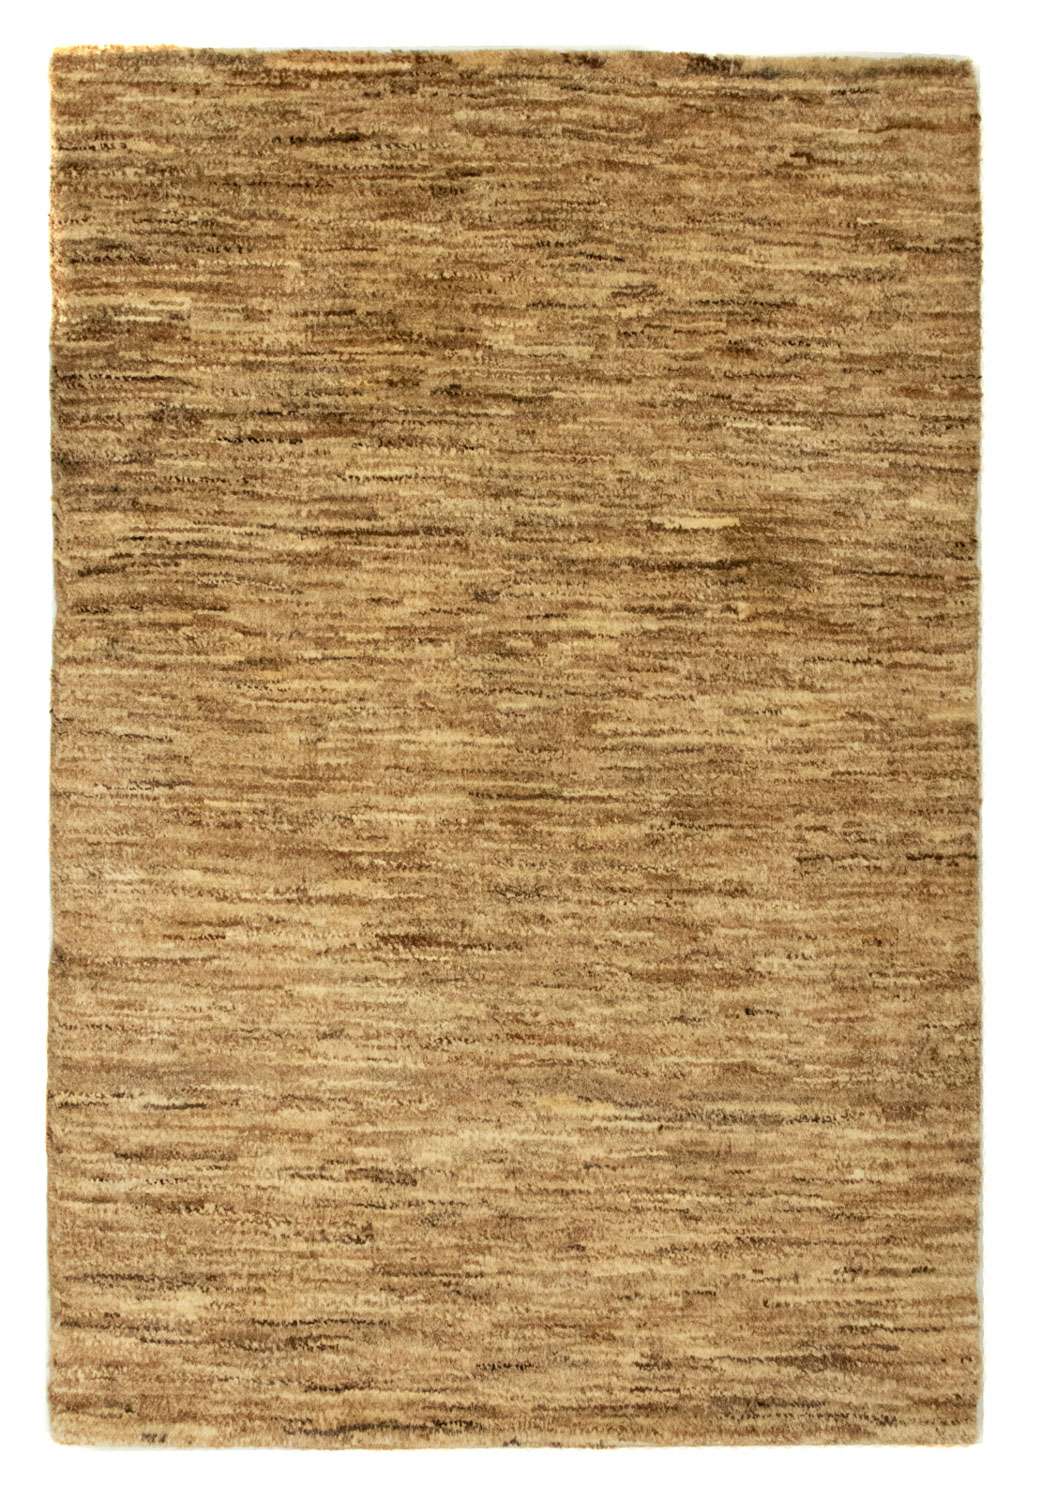 Gabbeh teppe - Indus - 92 x 61 cm - beige